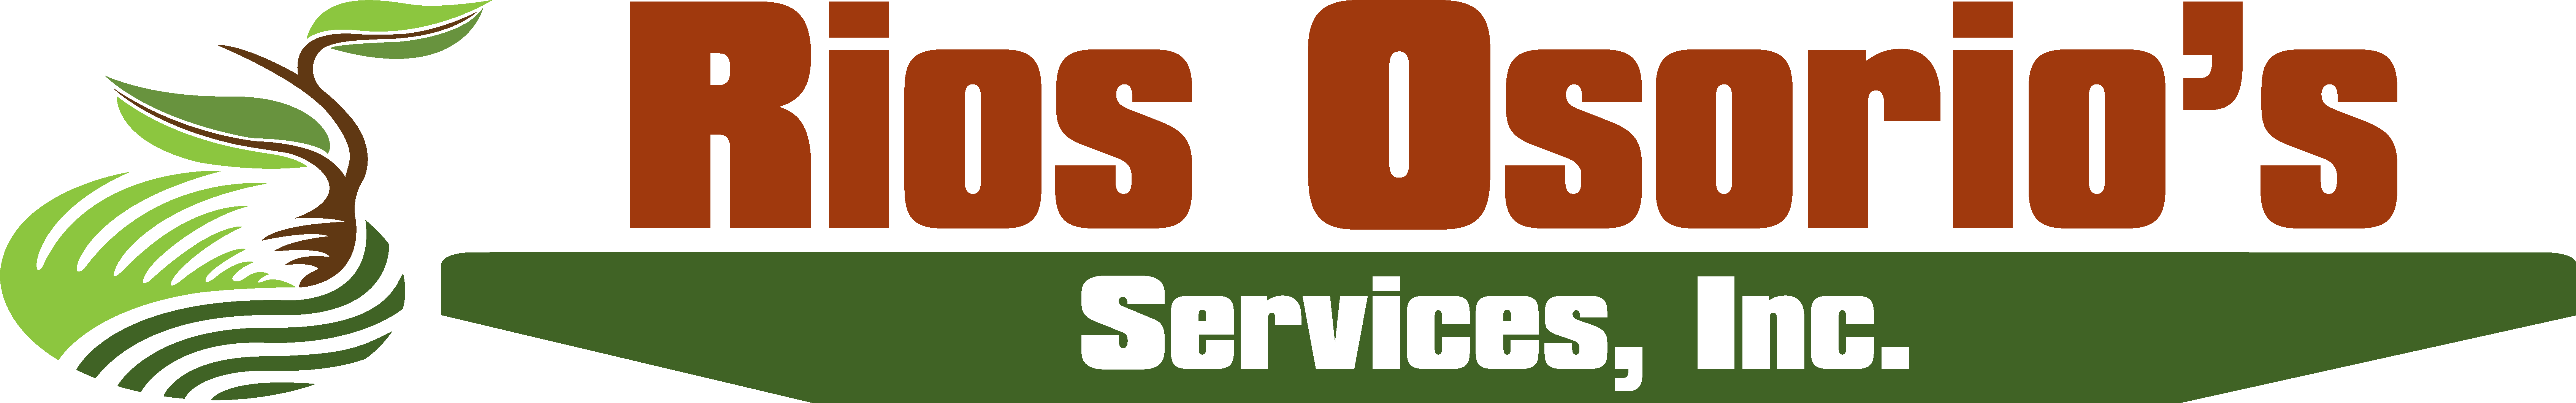 Rios Osorios Services, Inc.